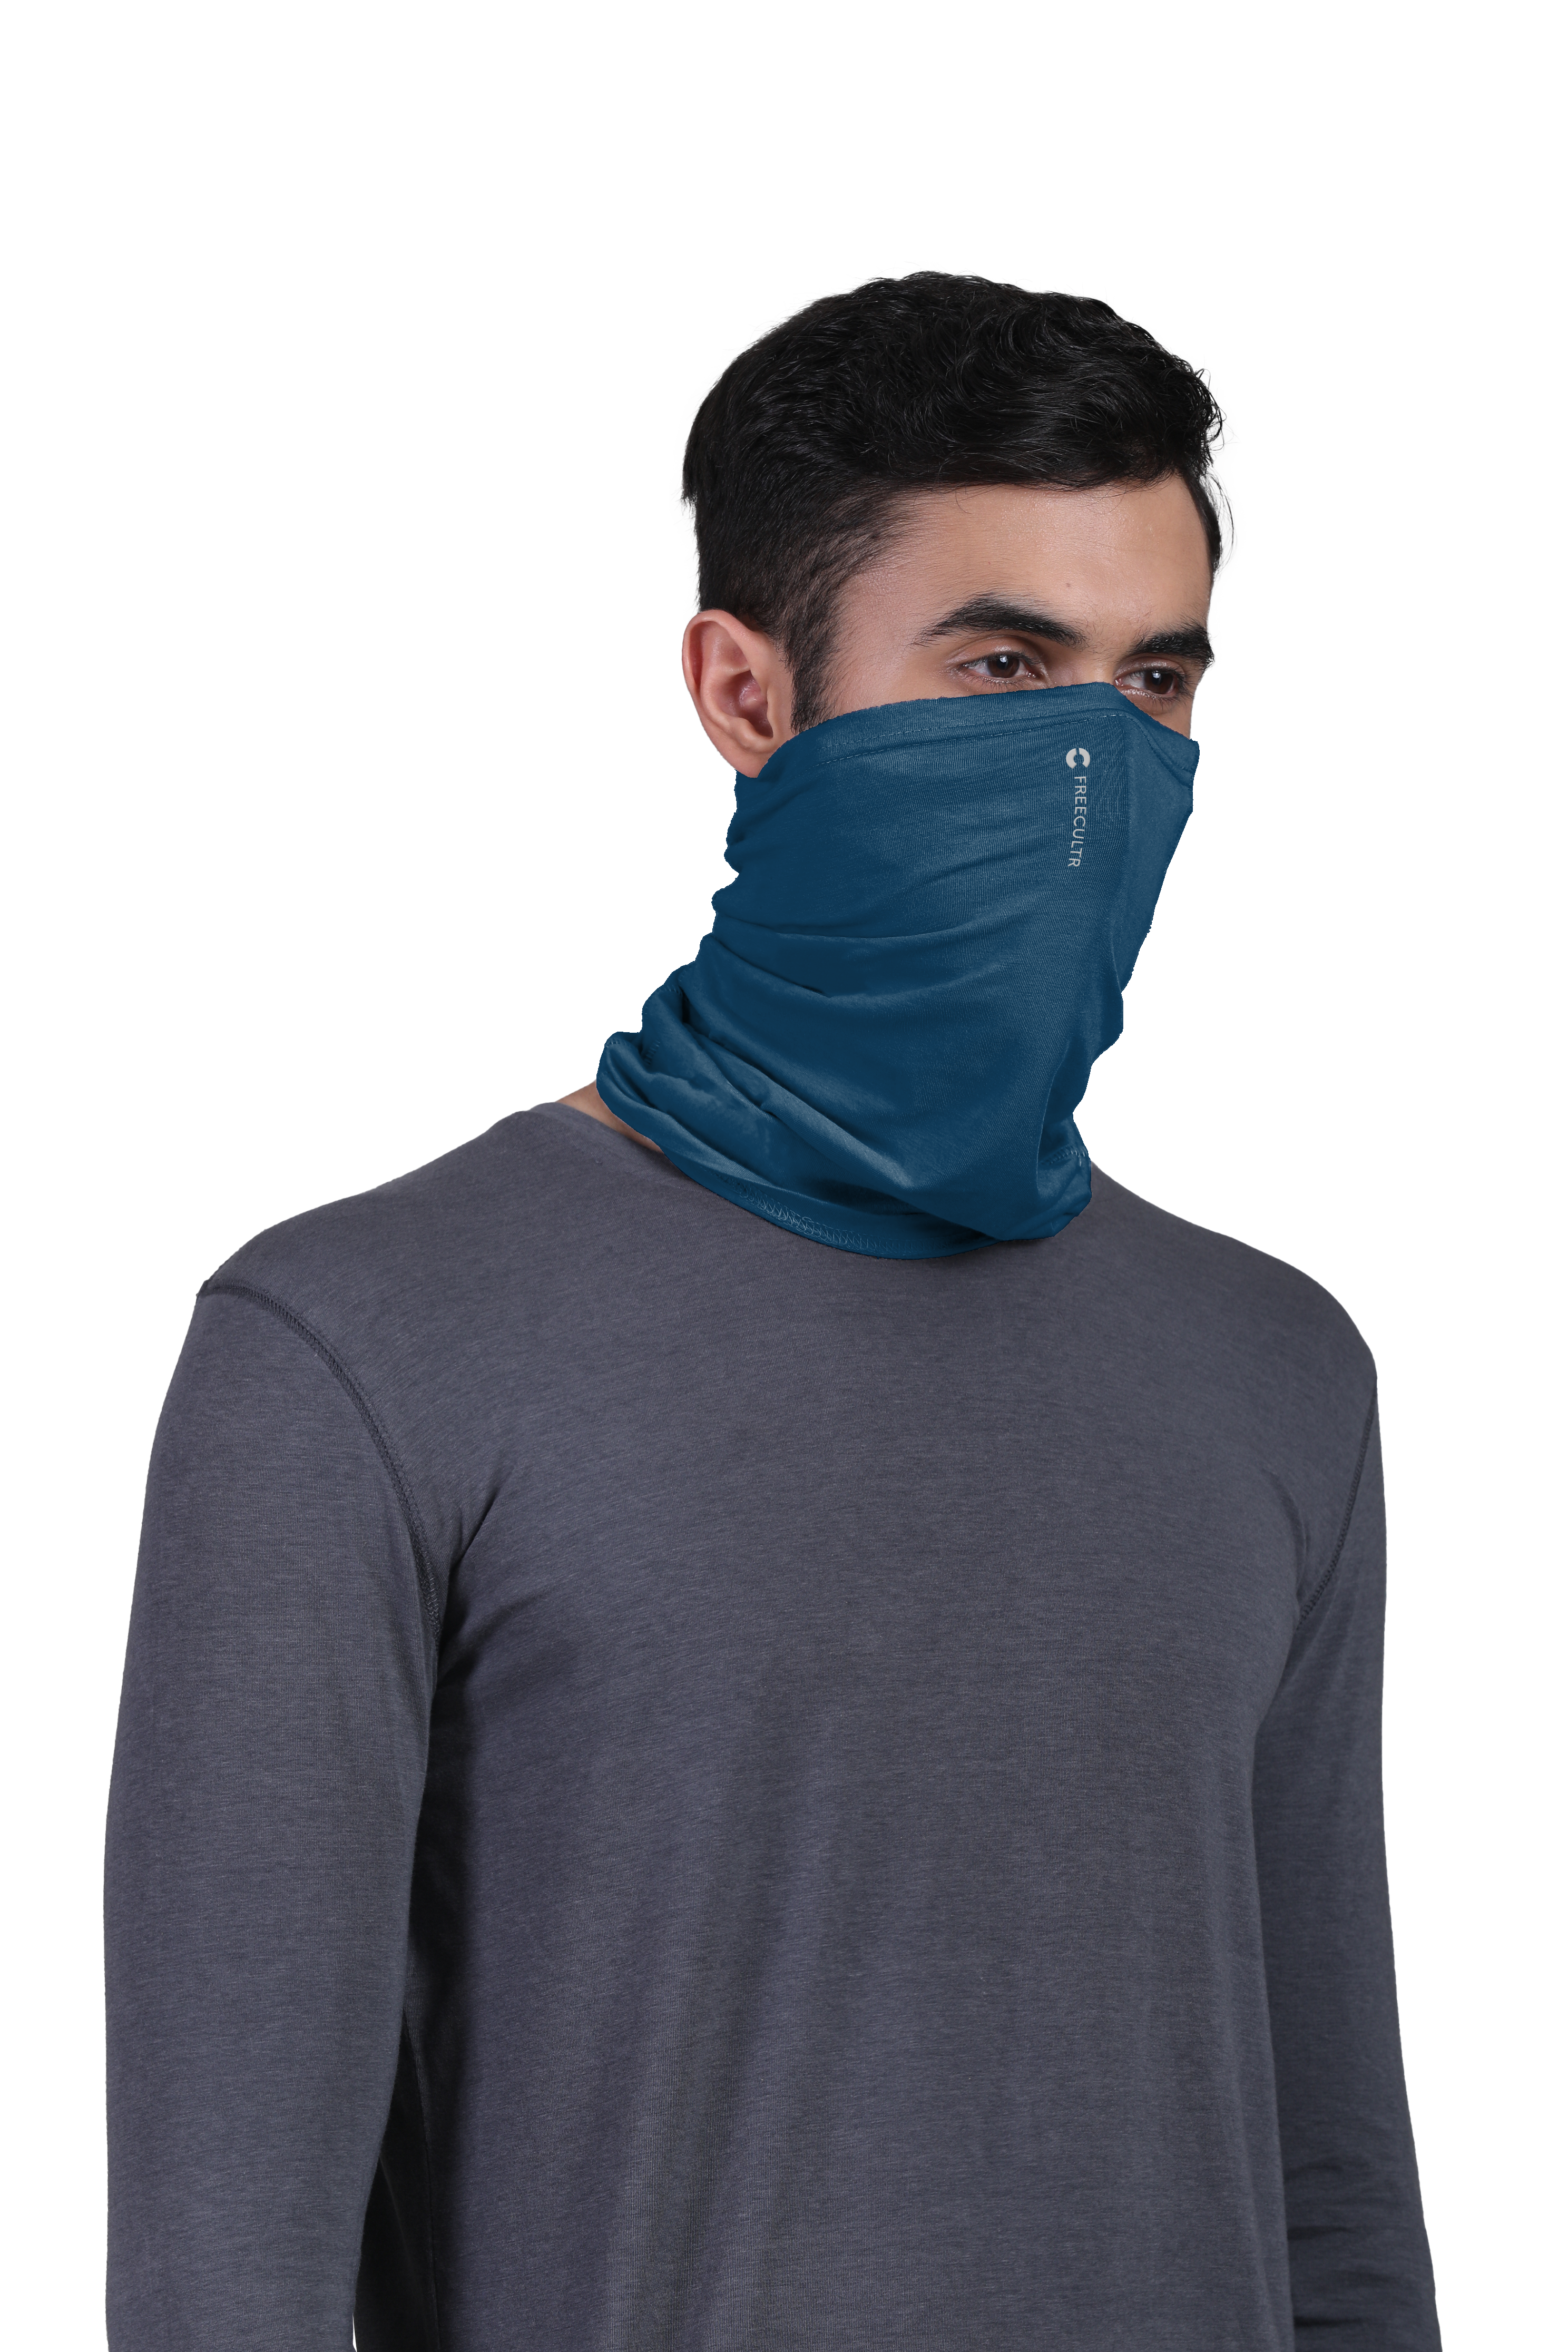 Unisex Organic Bandana Masks - Plain (Pack of 4)